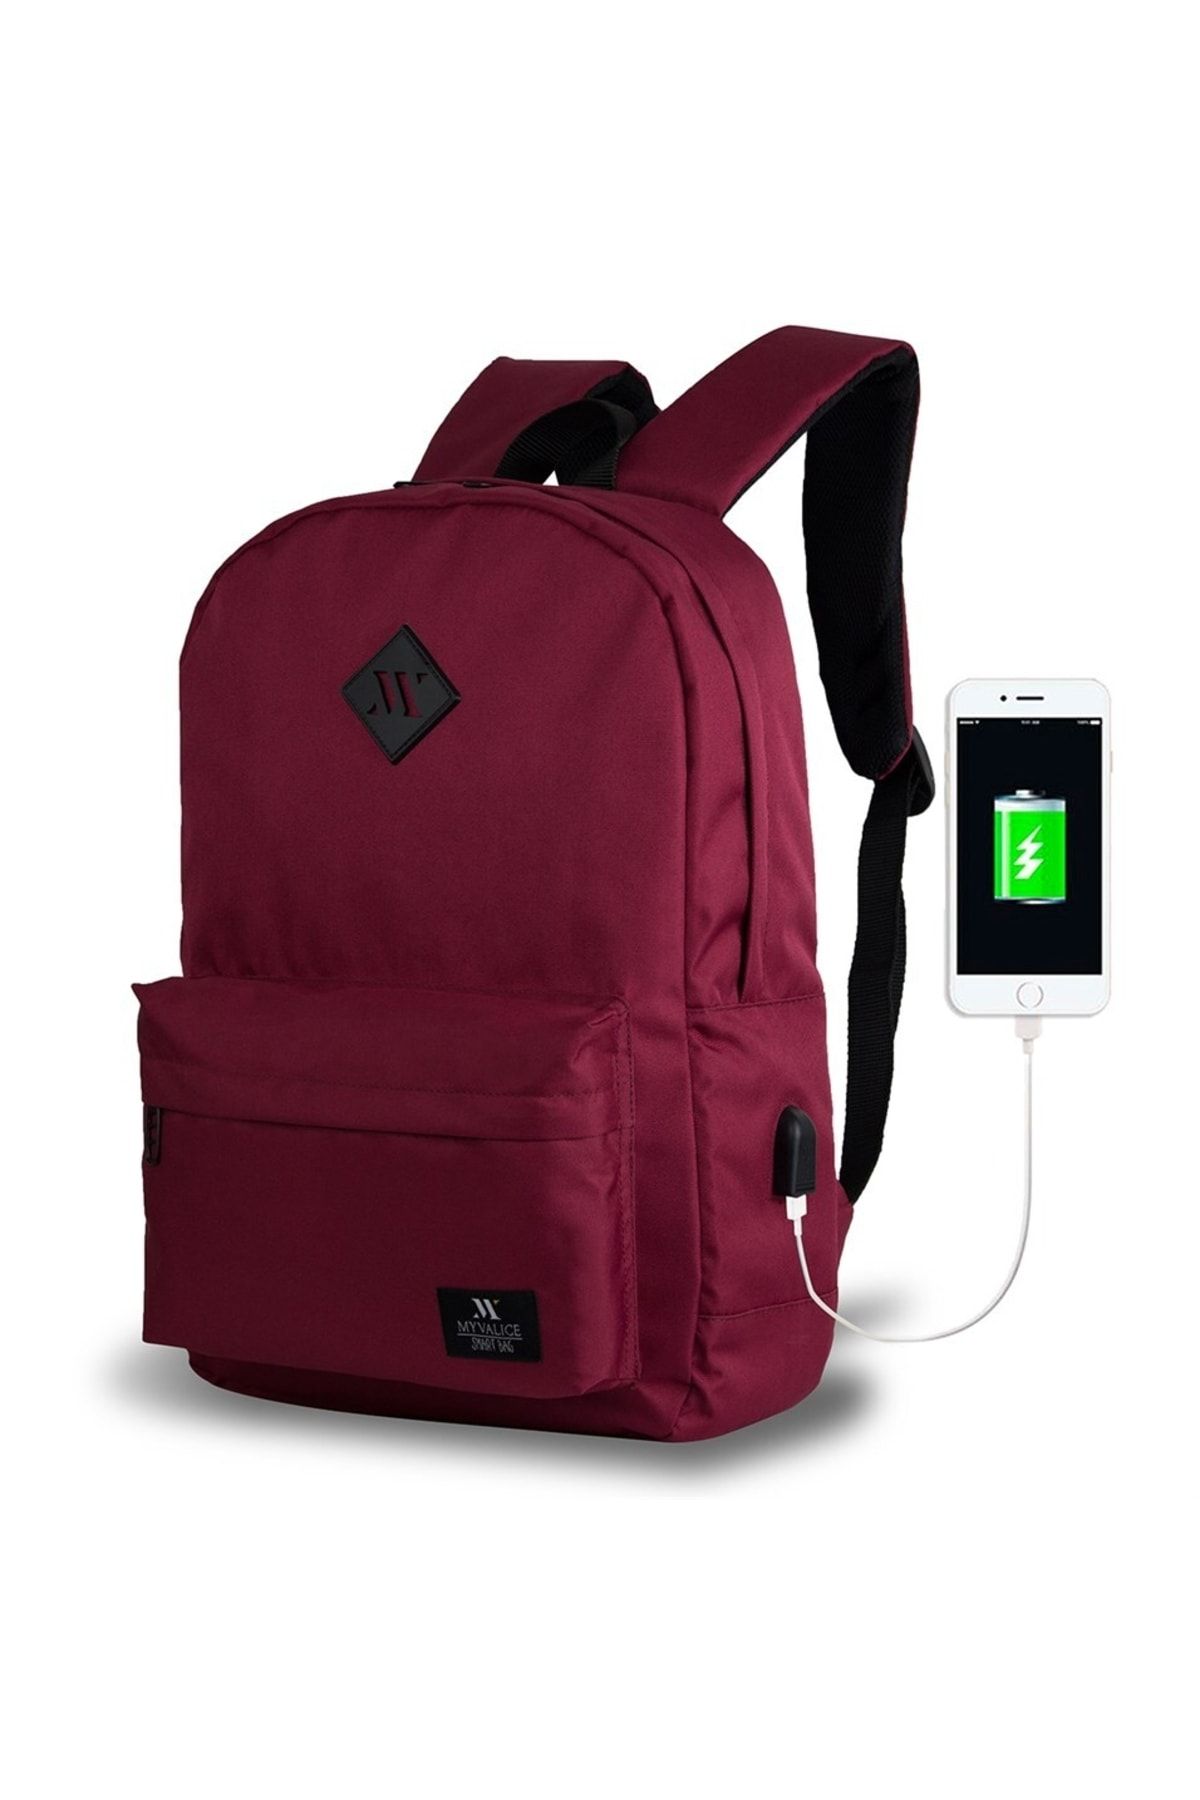 My Valice Smart Bag Specta Usb Şarj Girişli Akıllı Laptop Sırt Çantası Bordo